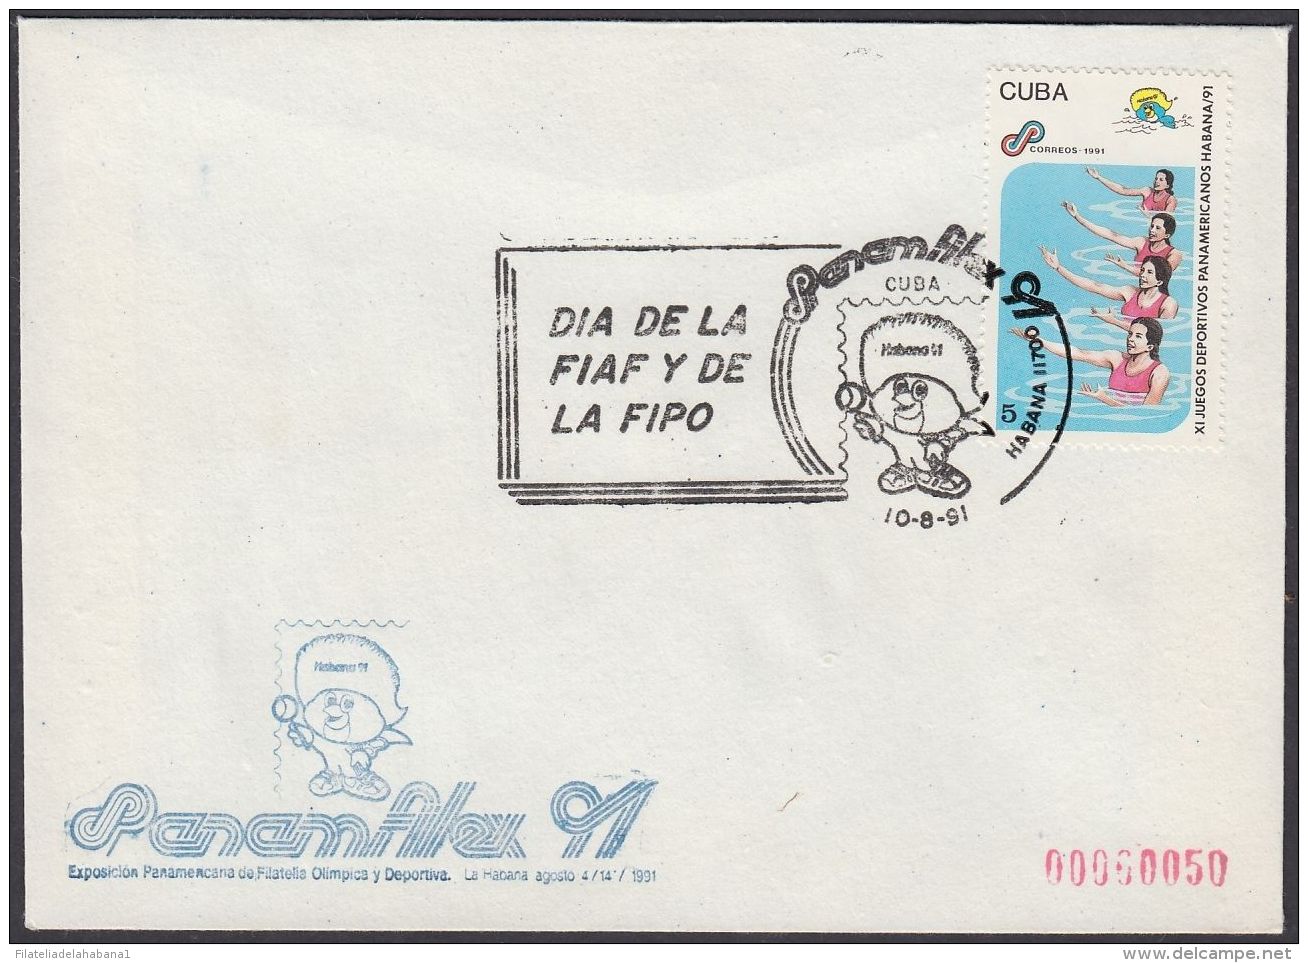 1991-CE-41 CUBA 1991 SPECIAL CANCEL. PANAMFILEX EXPO. DIA DE LA FIAF Y LA FIPO. - Briefe U. Dokumente